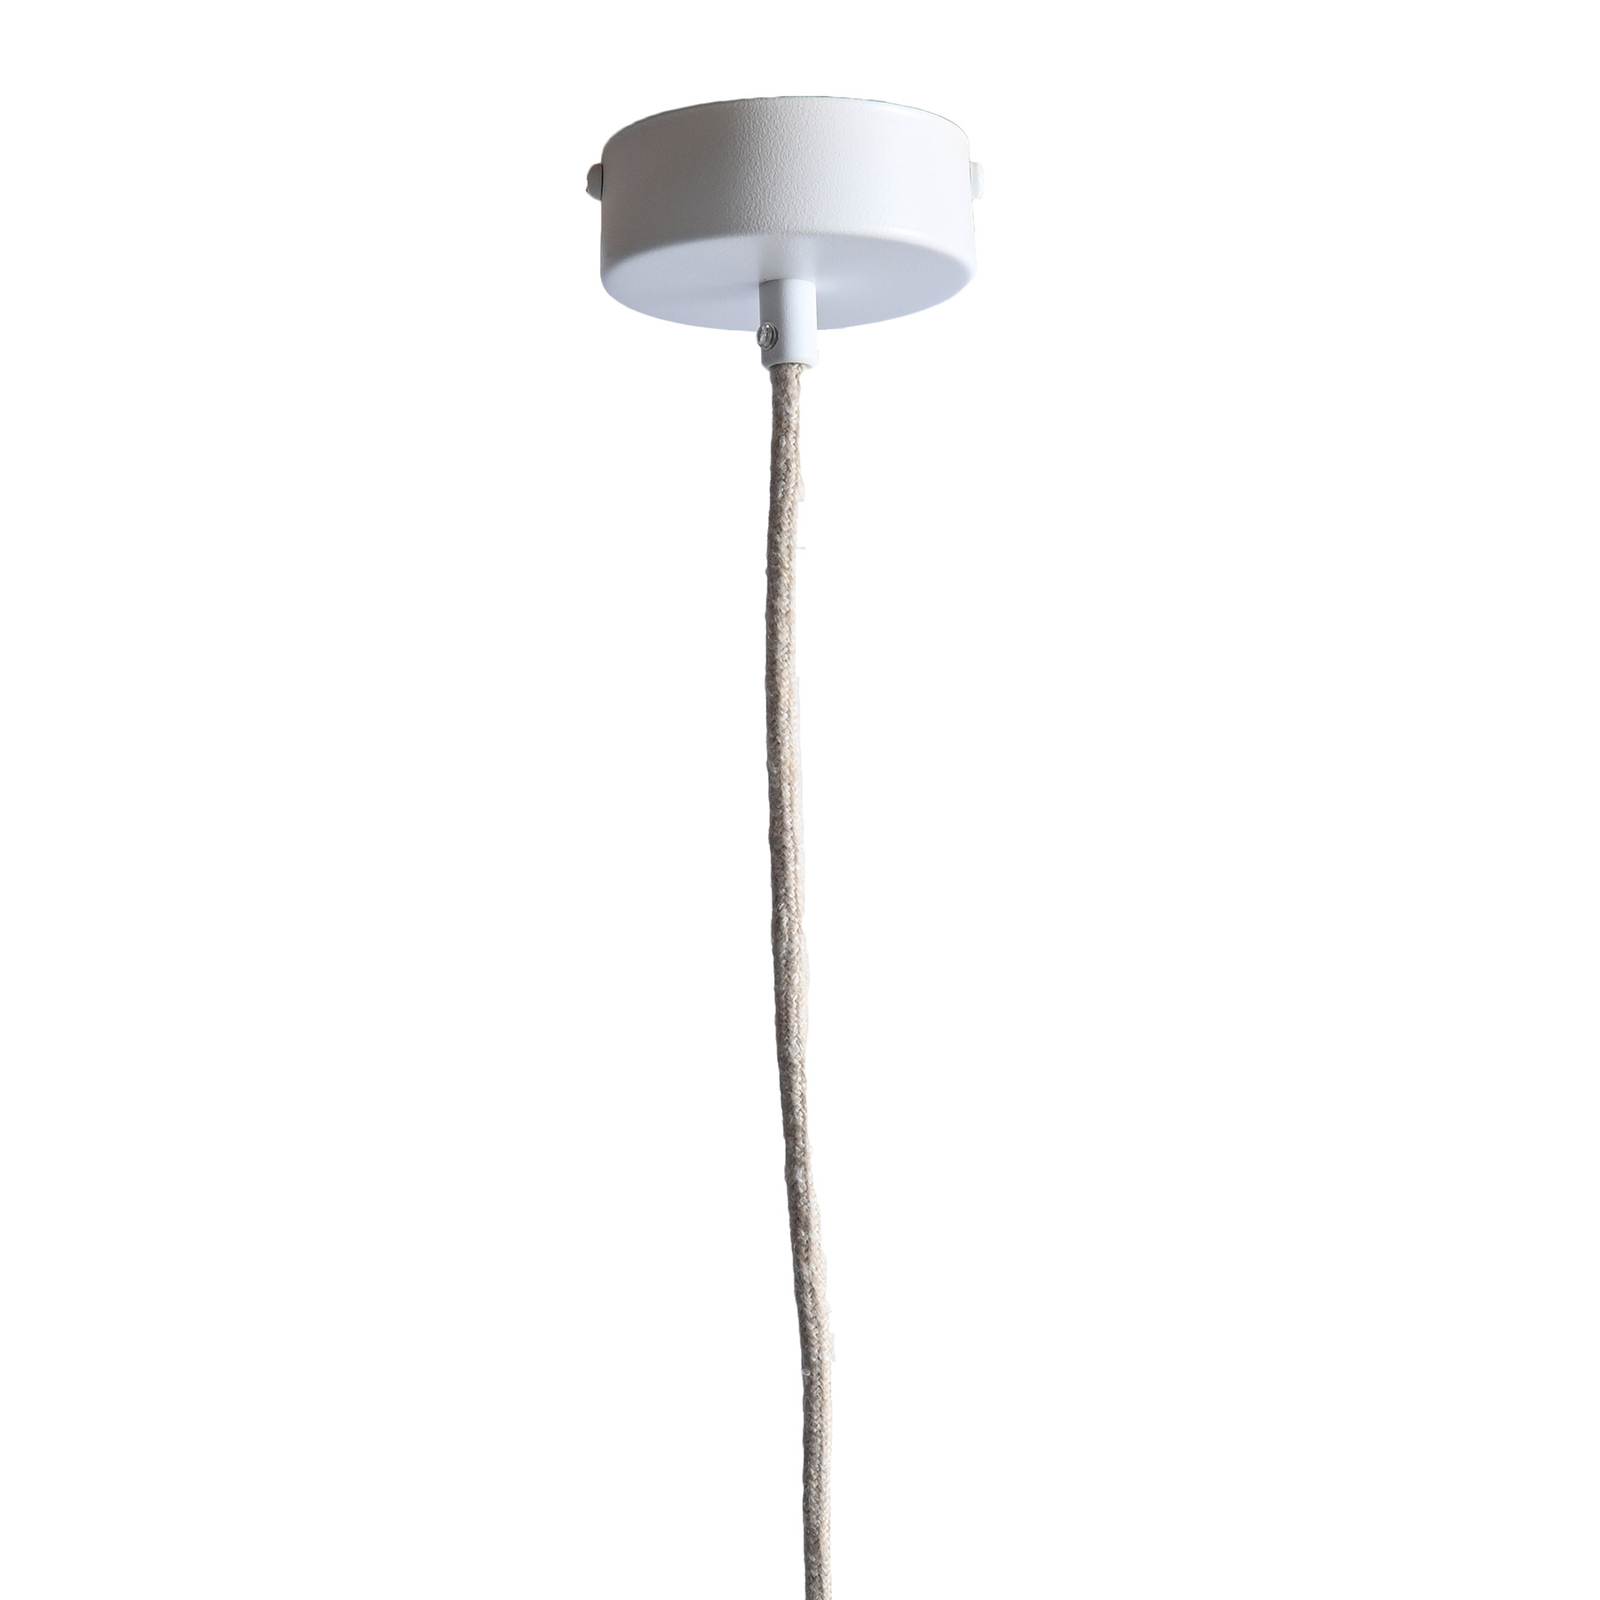 LeuchtNatur Nux hanglamp, eiken/wit